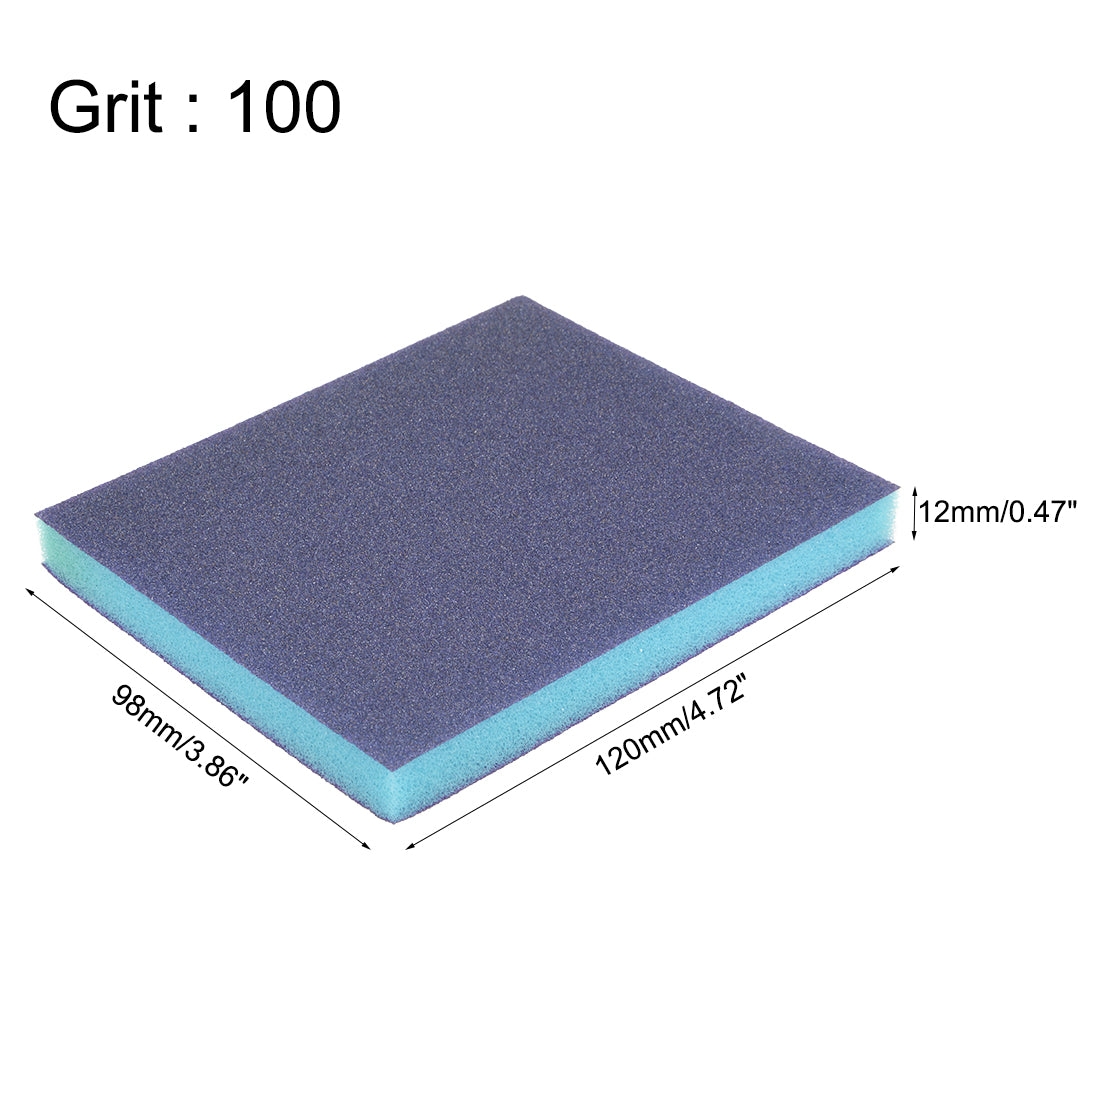 uxcell Uxcell Sanding Sponge, Coarse Grit 100 Grit Sanding Block Pad, 4.72" x 3.86" x 0.47" Size 8pcs